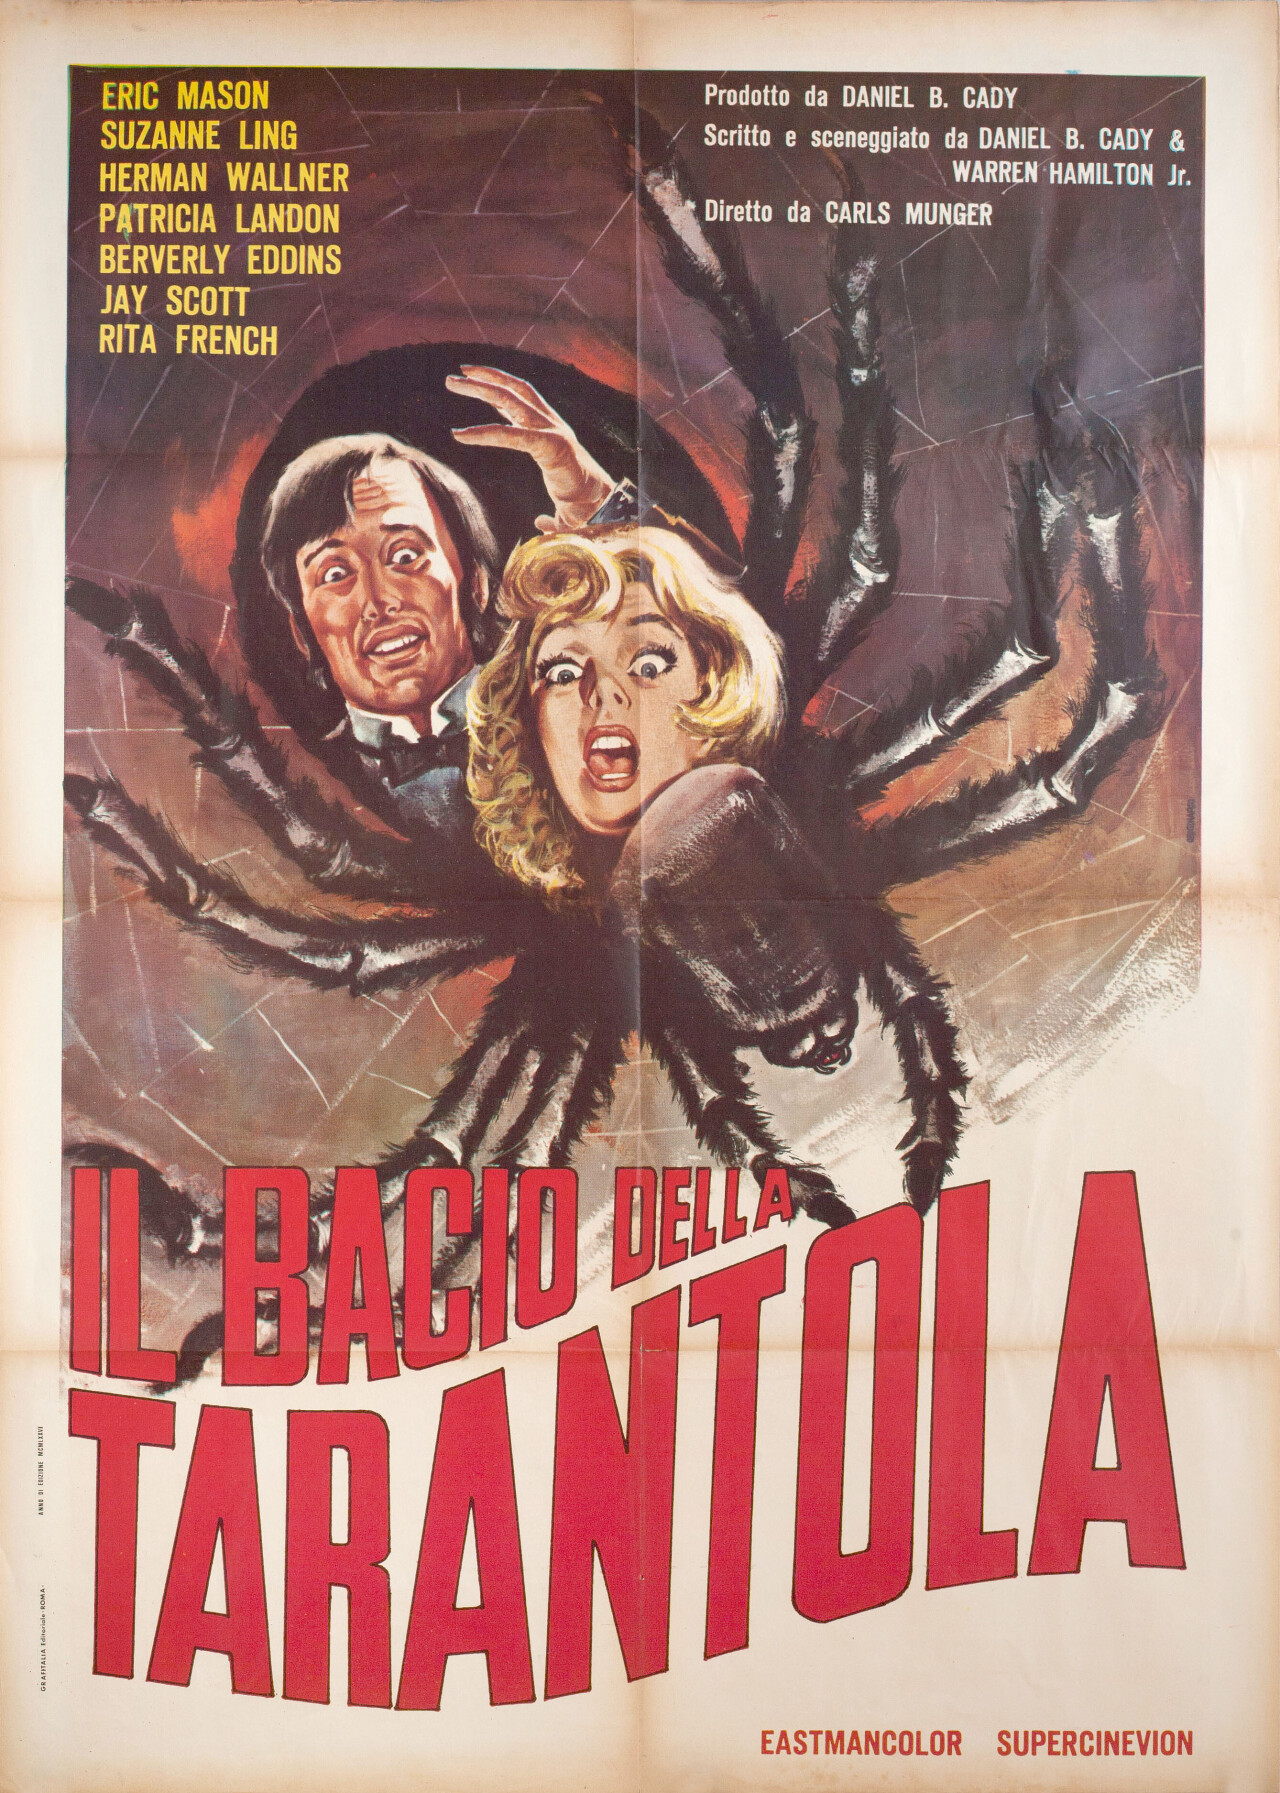 Поцелуй тарантула (Kiss of the Tarantula, 1976), режиссёр Крис Мангер, итальянский постер к фильму (ужасы, 1976 год)